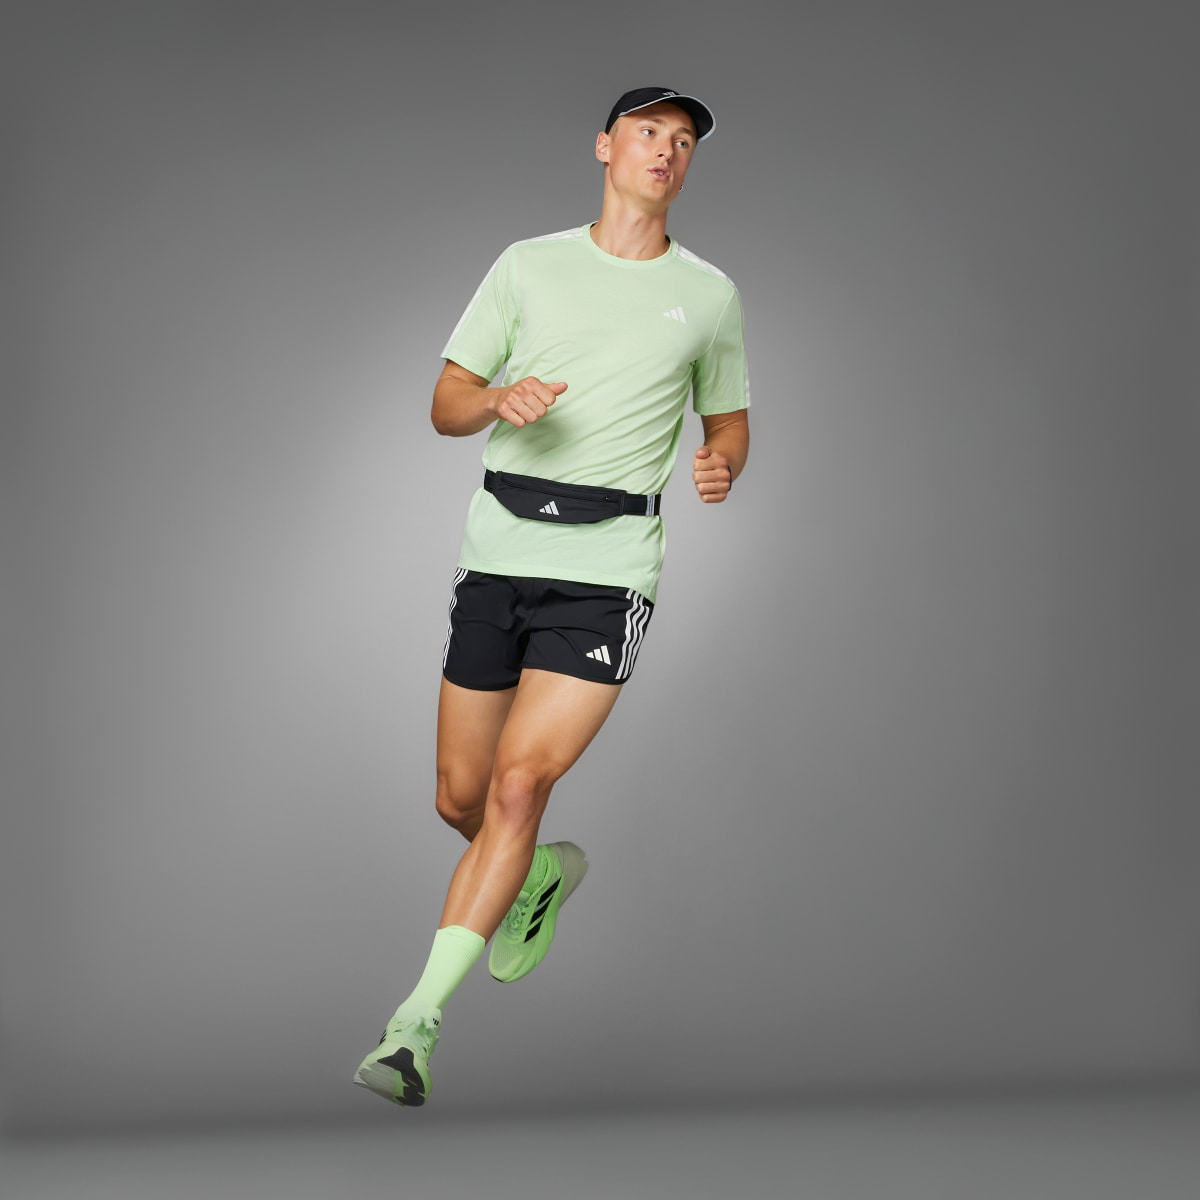 Adidas Own the Run 3-Stripes Shorts. 7